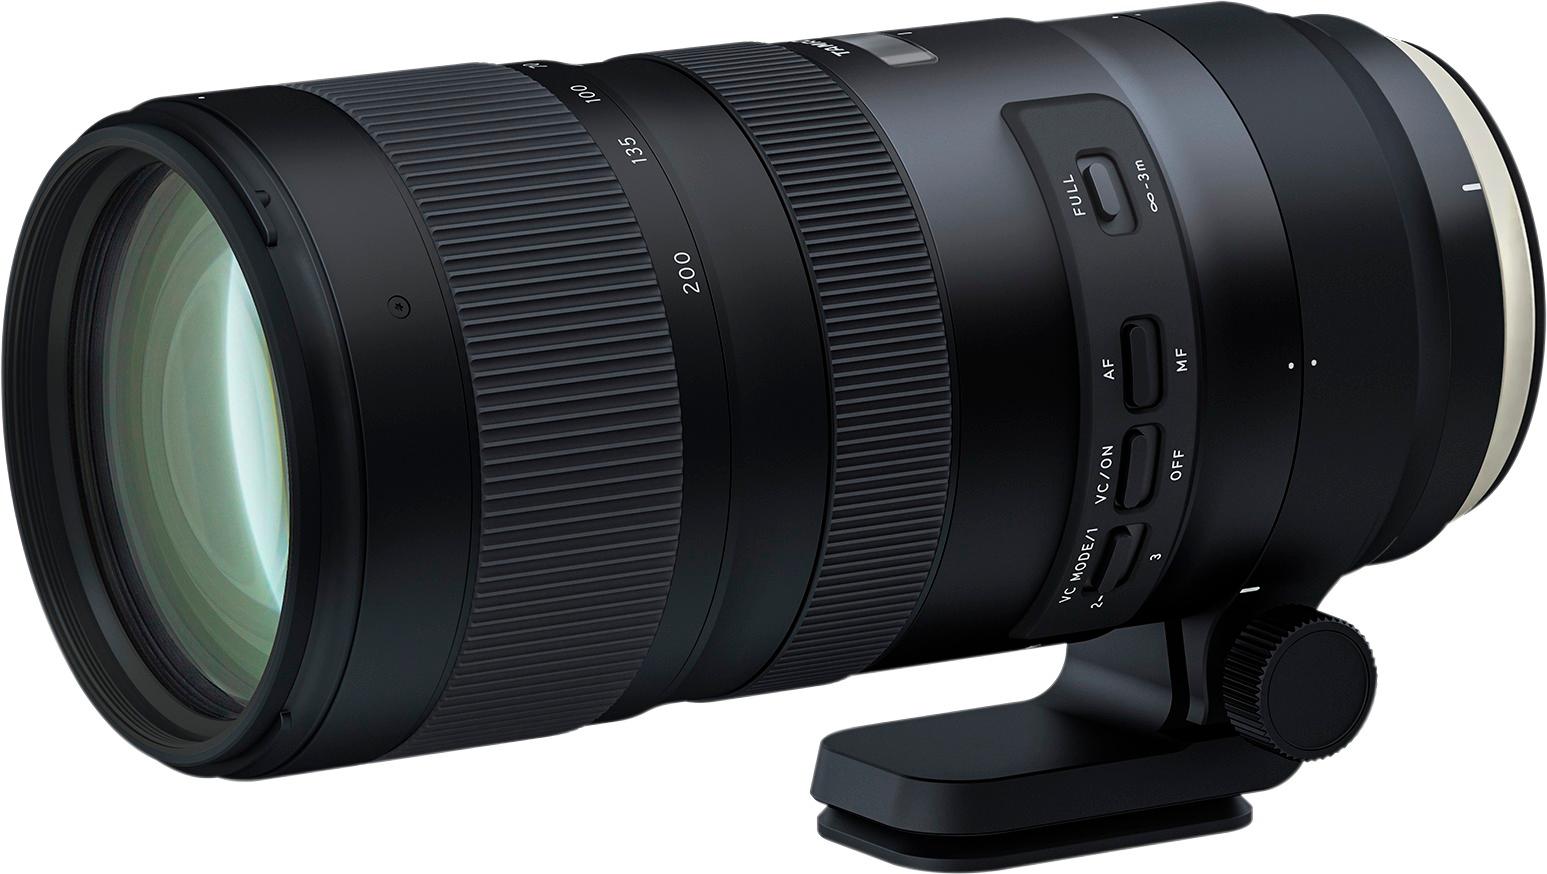 Left View: Canon - EF-S18-135mm F3.5-5.6 IS USM Standard Zoom Lens for EOS DSLR Cameras - Black